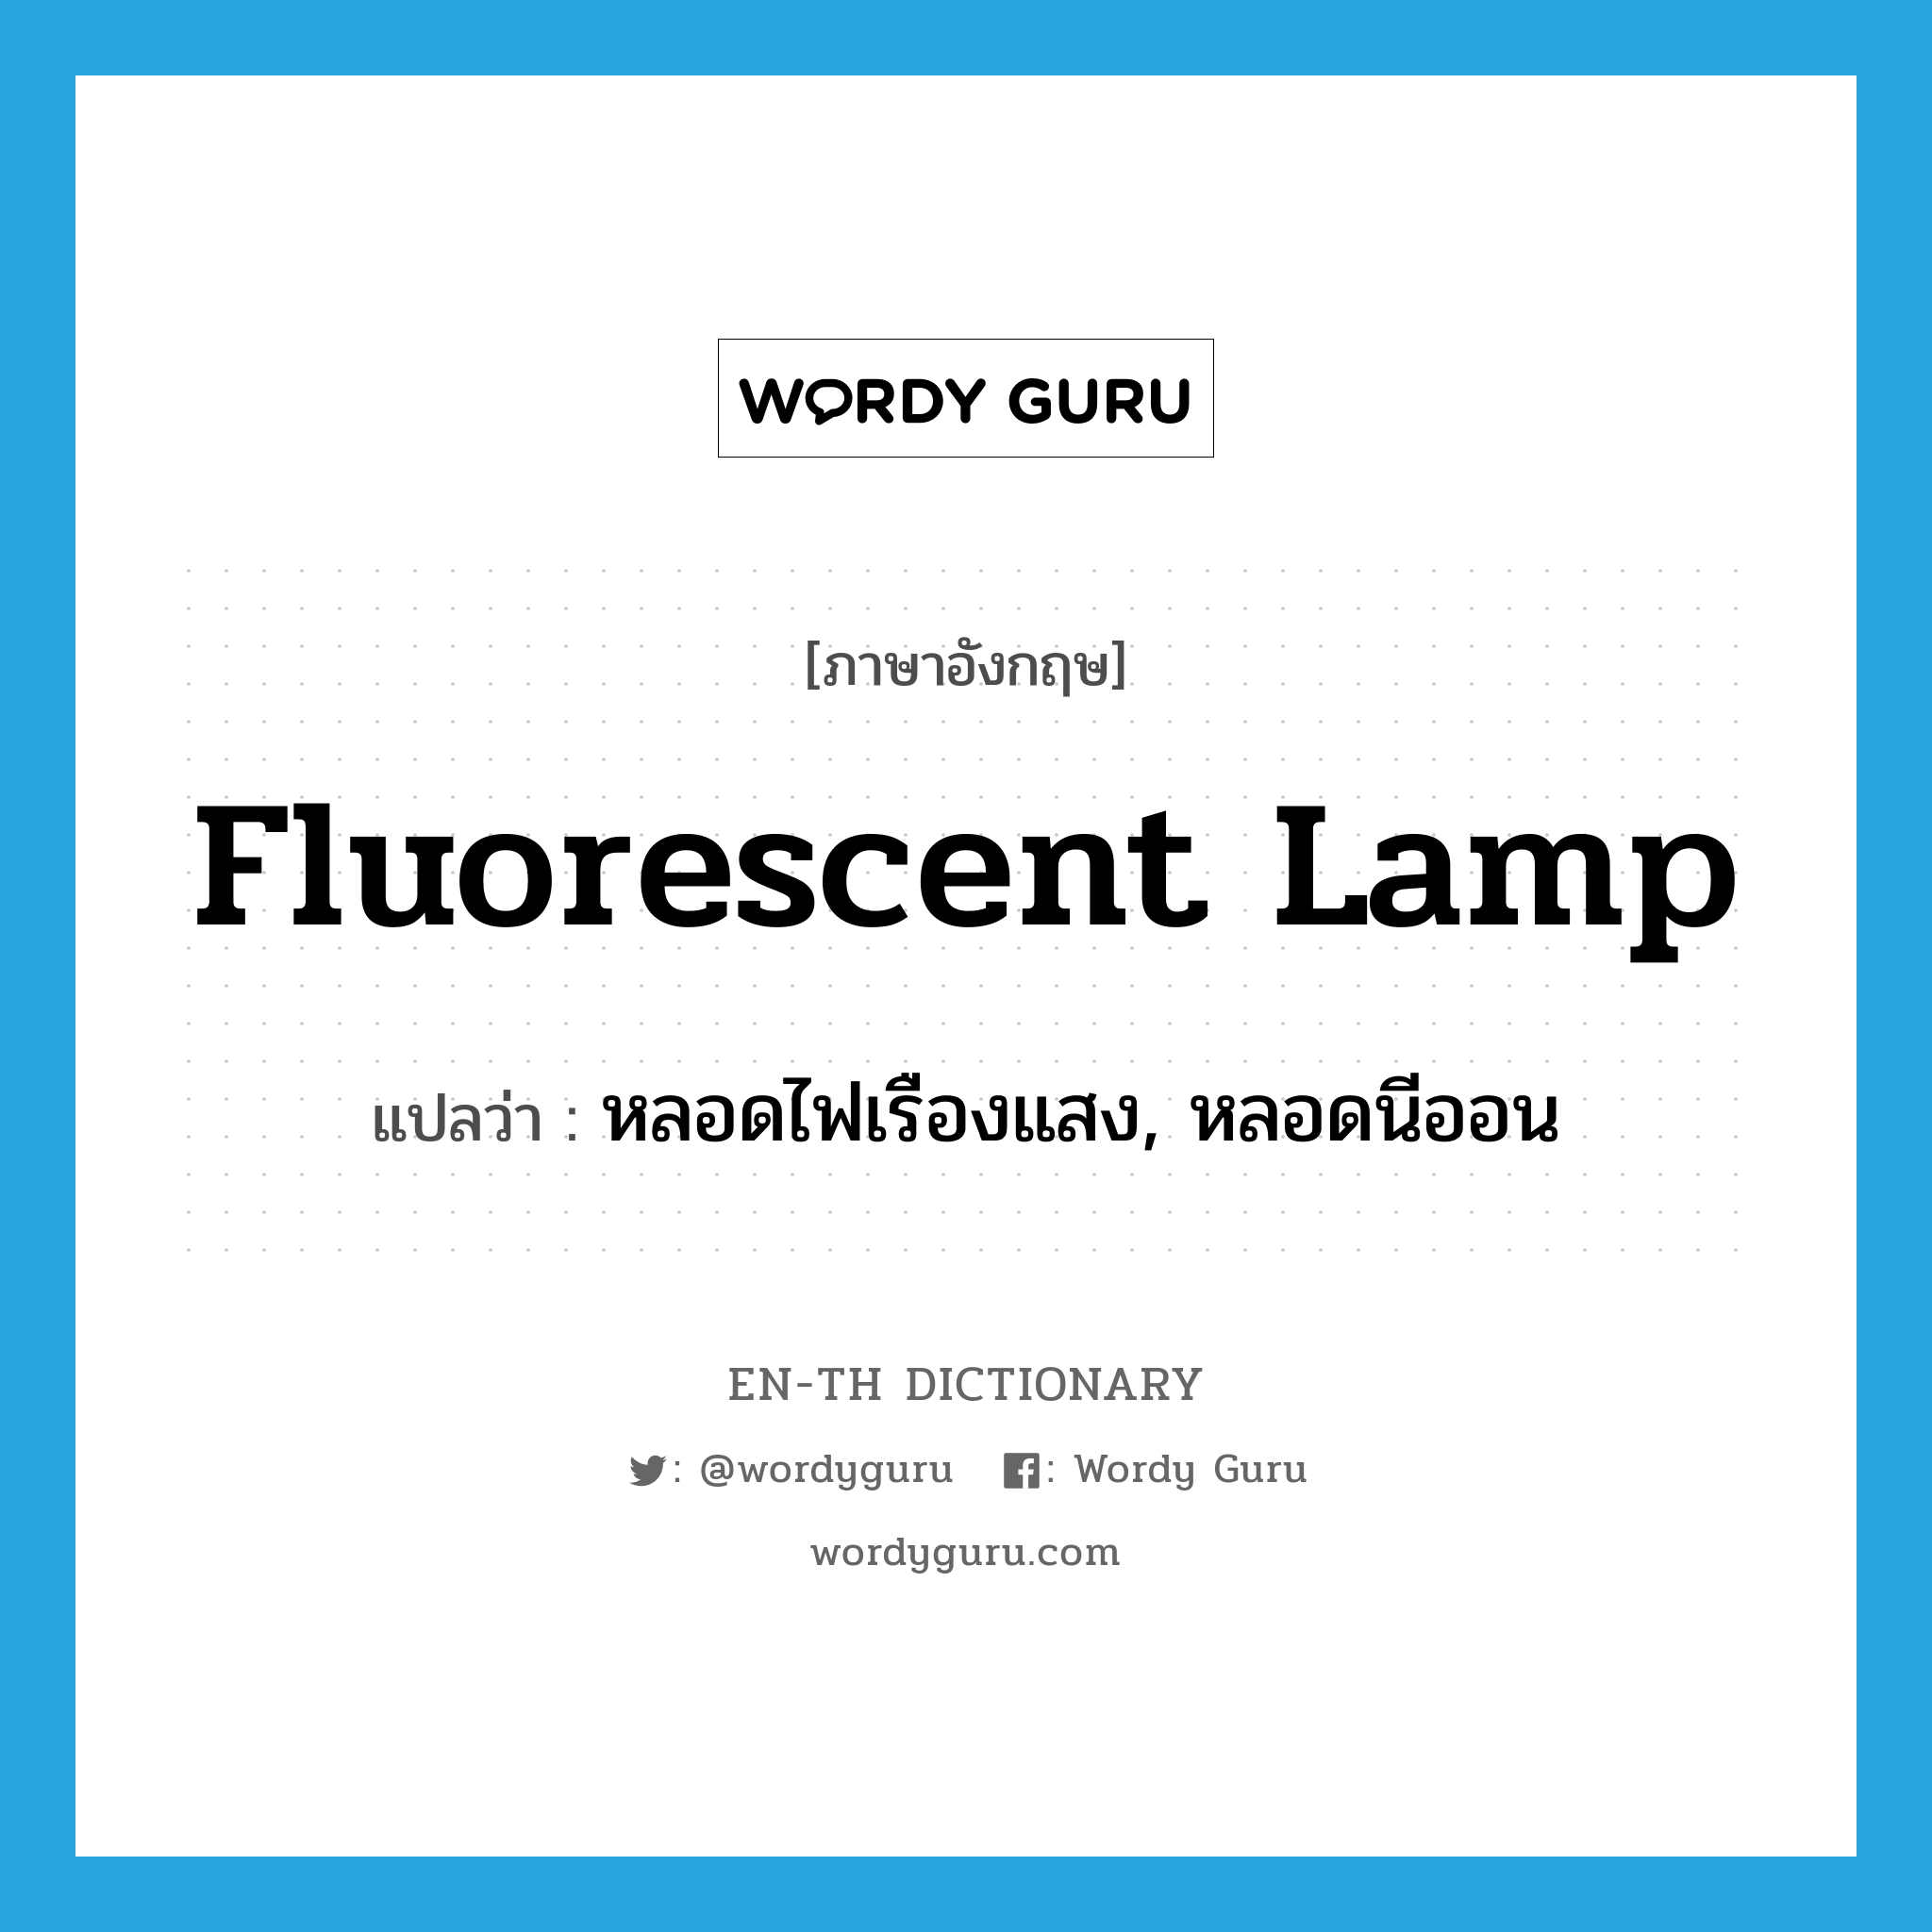 หลอดไฟเรืองแสง, หลอดนีออน ภาษาอังกฤษ?, คำศัพท์ภาษาอังกฤษ หลอดไฟเรืองแสง, หลอดนีออน แปลว่า fluorescent lamp ประเภท N หมวด N